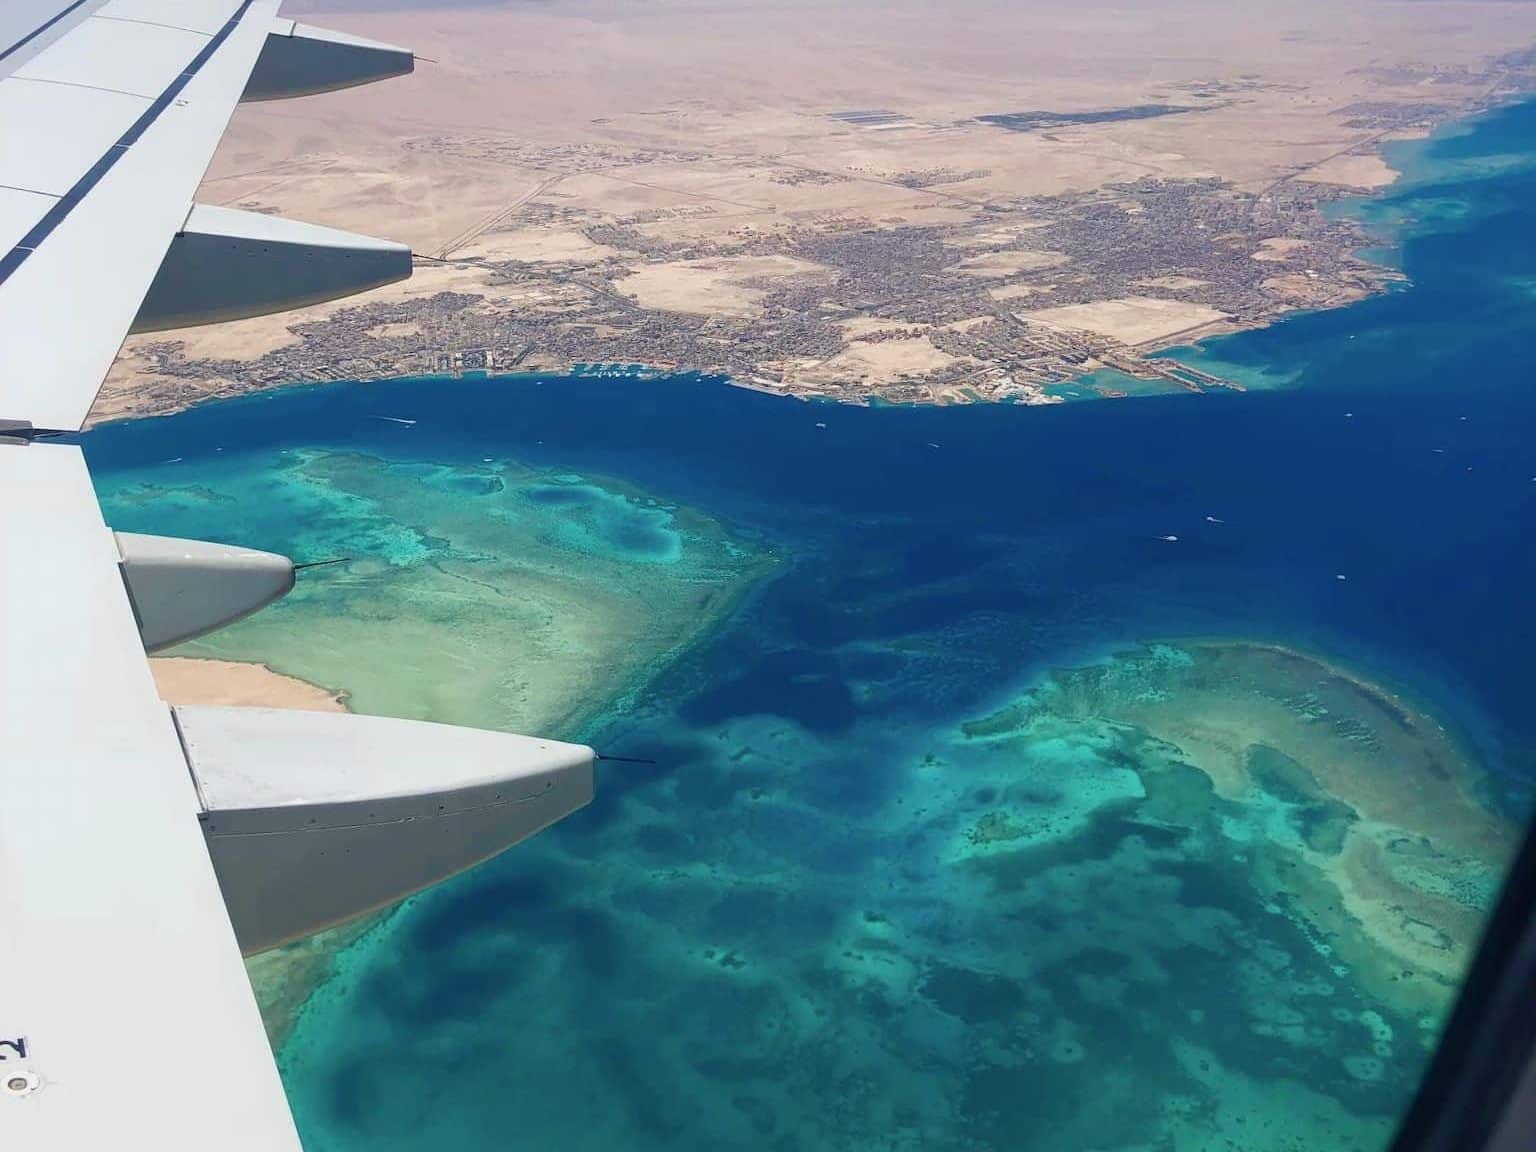 Anflug auf Hurghada: Nach der Landung droht erst einmal Gewusel und Verwirrung. Foto: Sascha Tegtmeyer